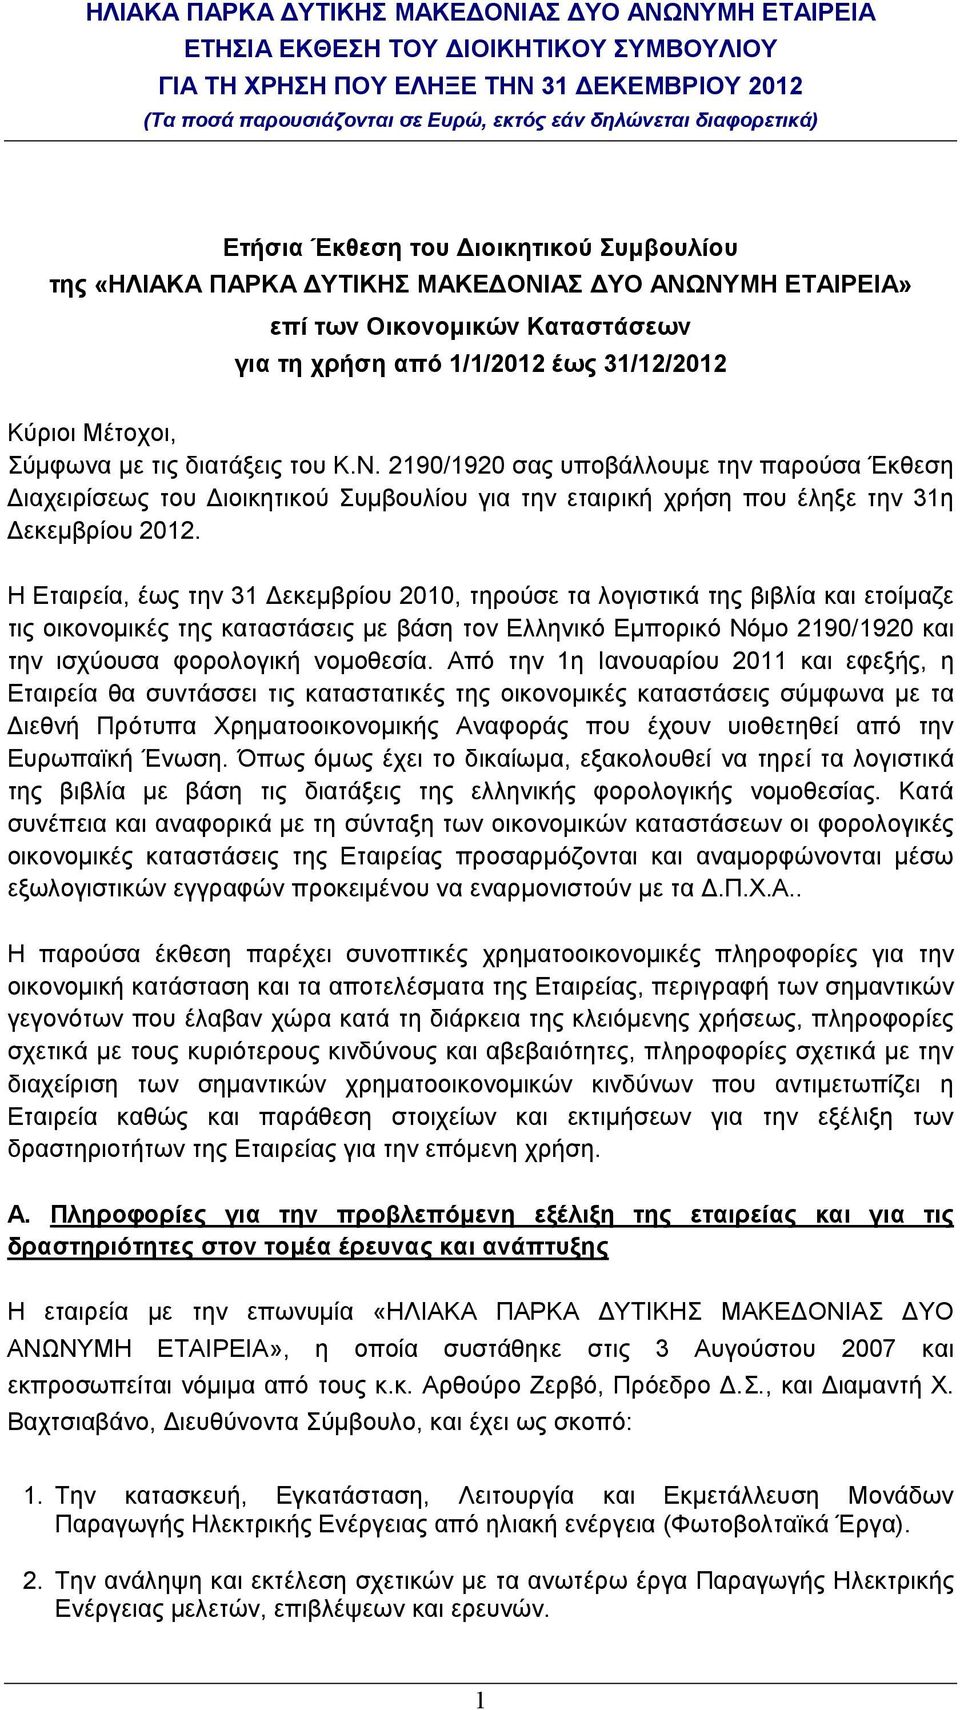 Η Εταιρεία, έως την 31 εκεµβρίου 2010, τηρούσε τα λογιστικά της βιβλία και ετοίµαζε τις οικονοµικές της καταστάσεις µε βάση τον Ελληνικό Εµπορικό Νόµο 2190/1920 και την ισχύουσα φορολογική νοµοθεσία.